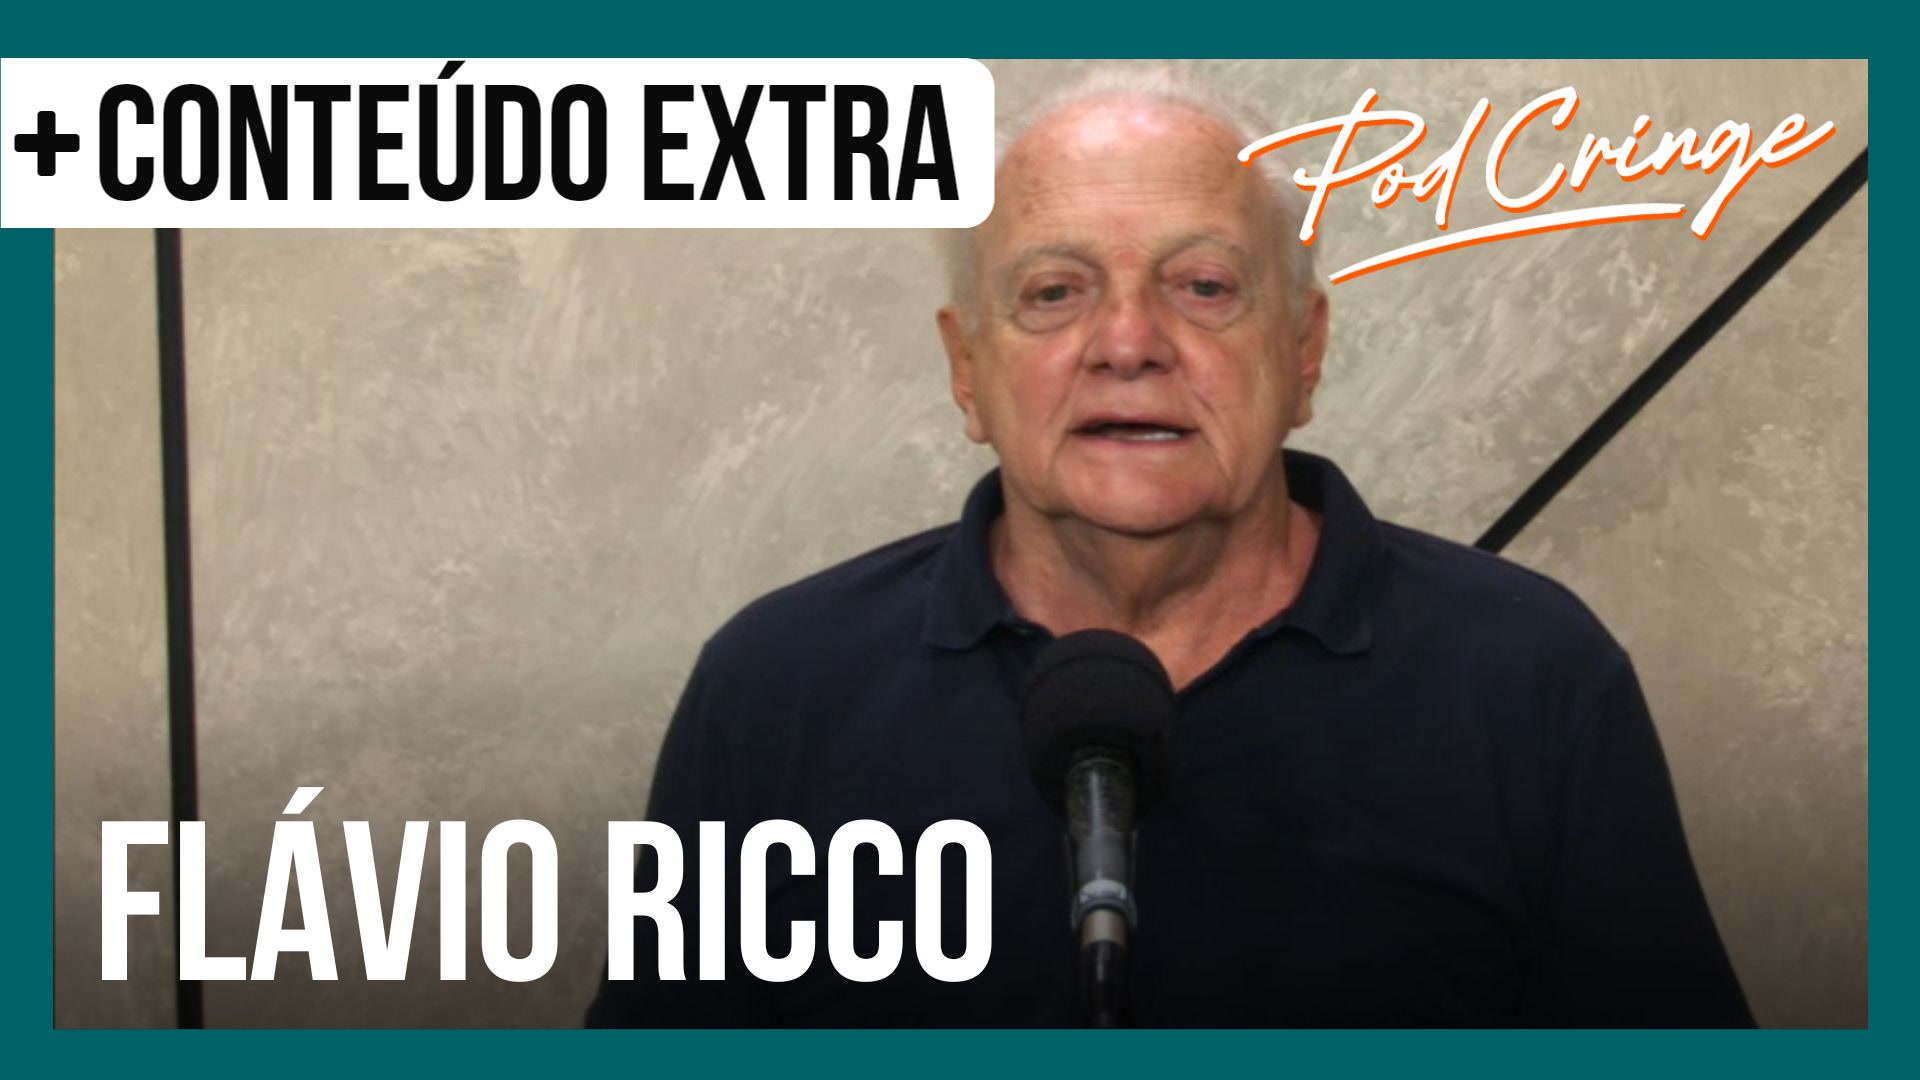 Vídeo: Podcast PodCringe : "Eu nem gostaria de dar essa notícia", relembra Flávio Ricco sobre acidente que matou Gugu